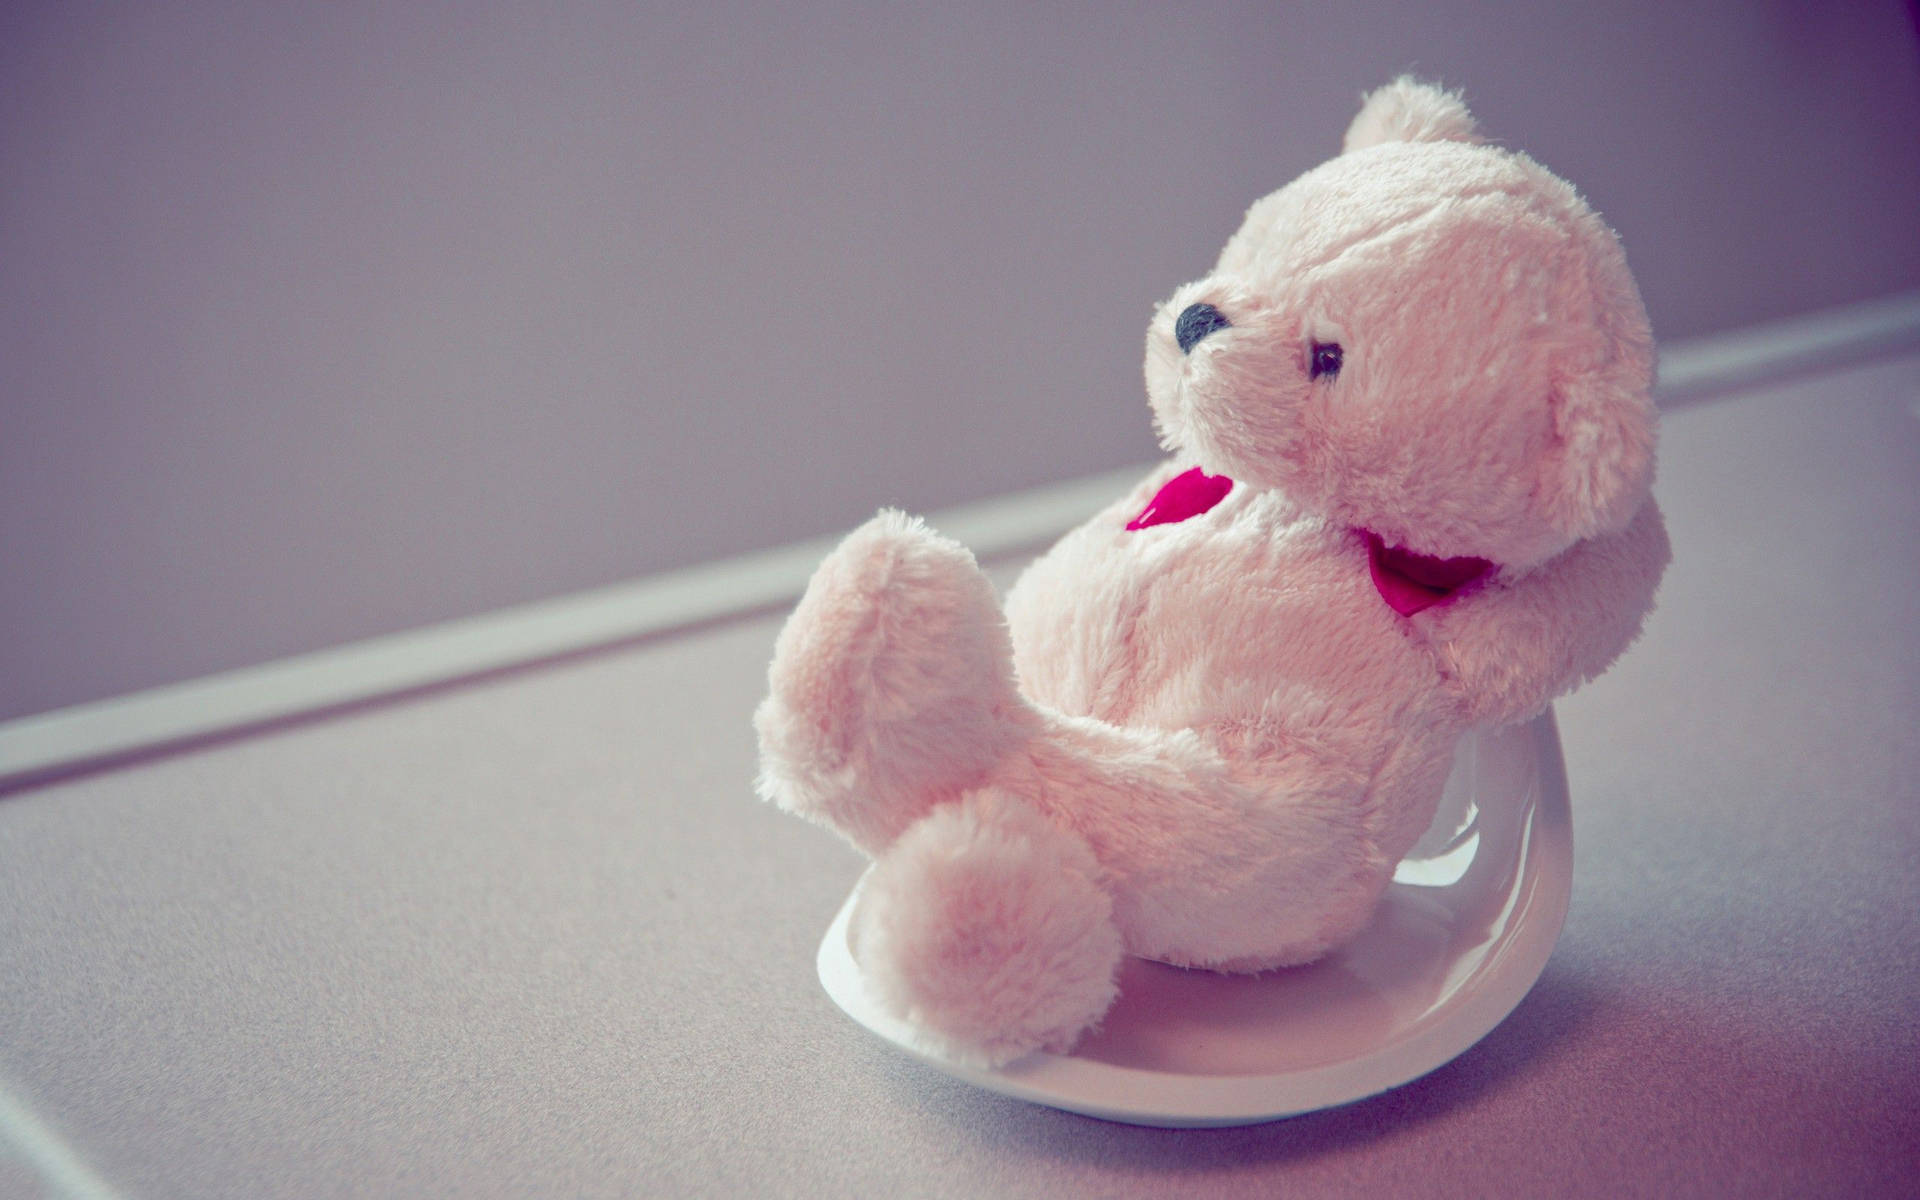 Cute Stuffed Teddy Bear Background